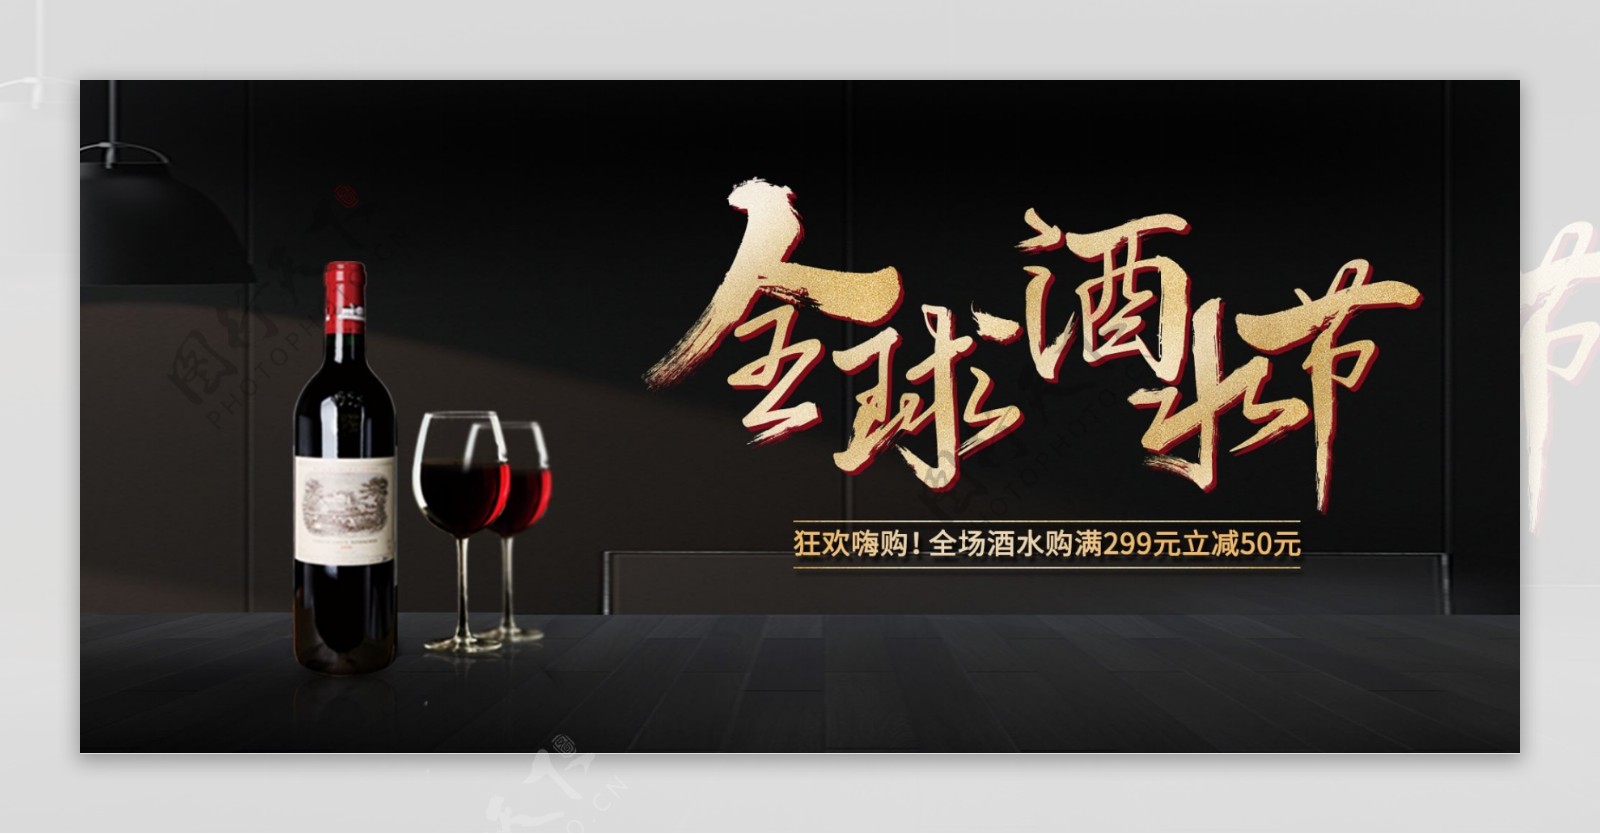 全球酒水节banner